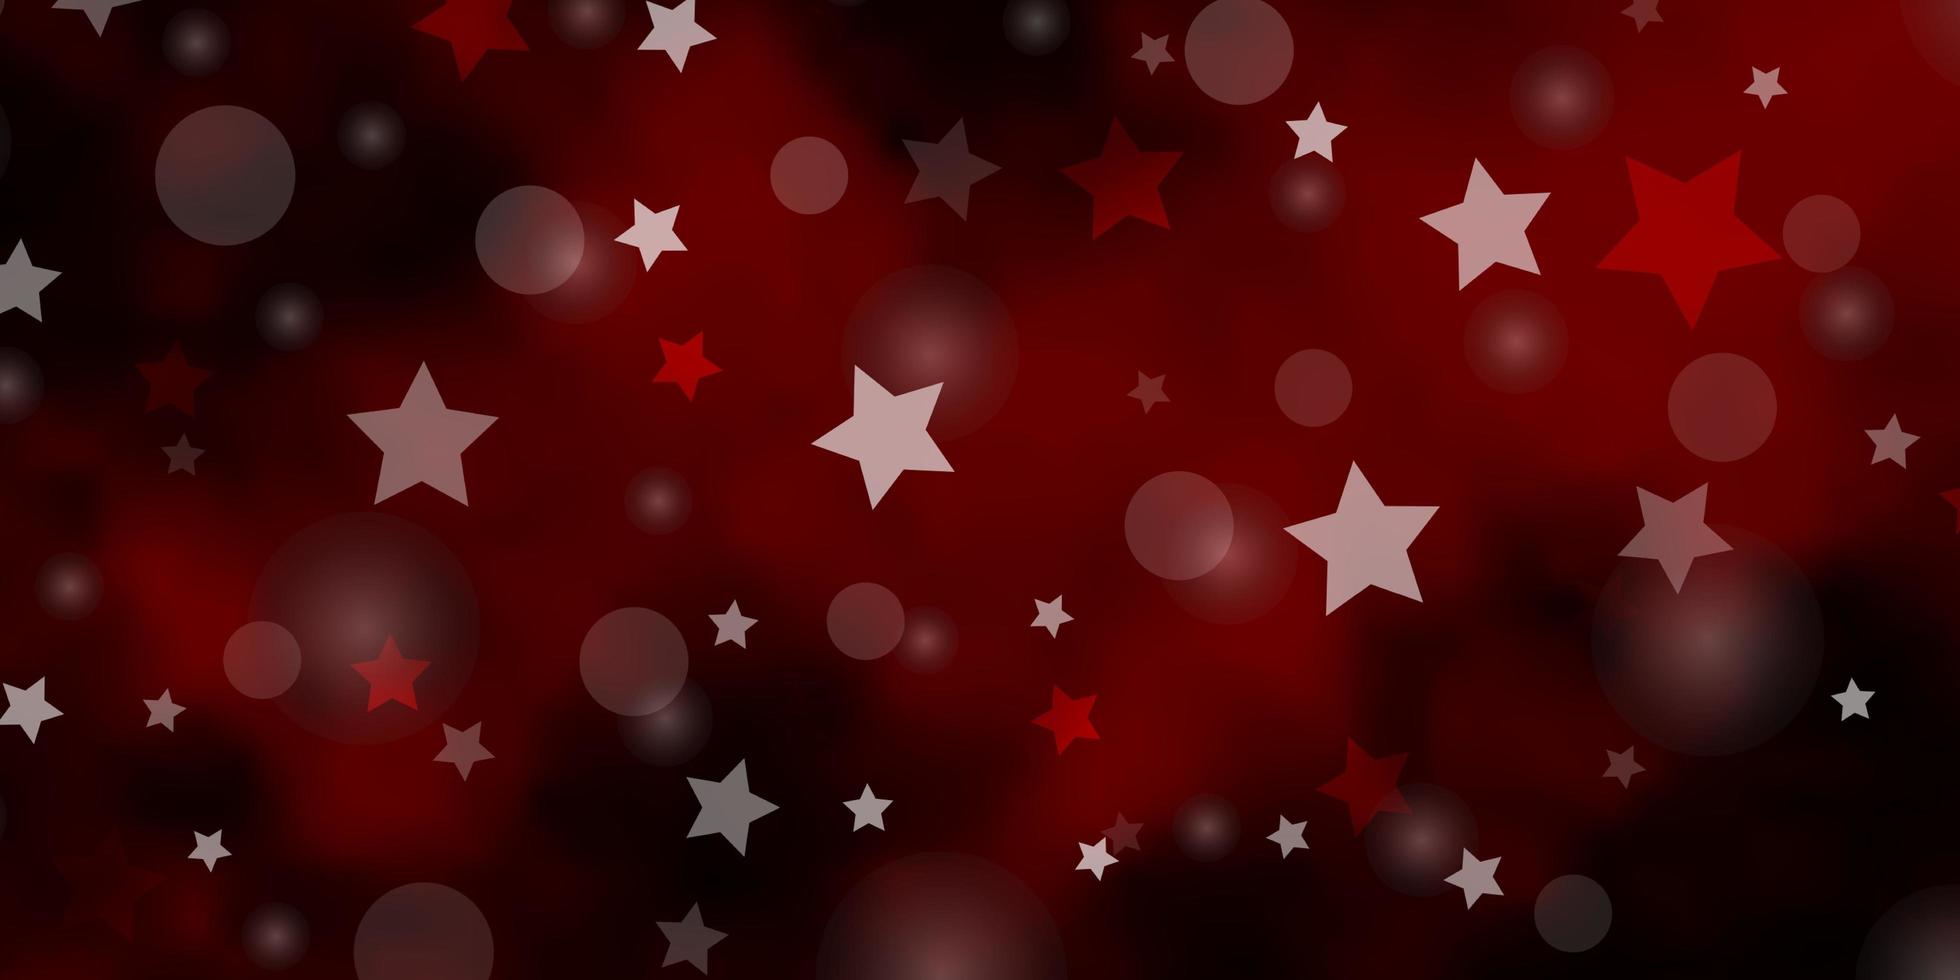 diseño de vector rojo oscuro con círculos, estrellas.